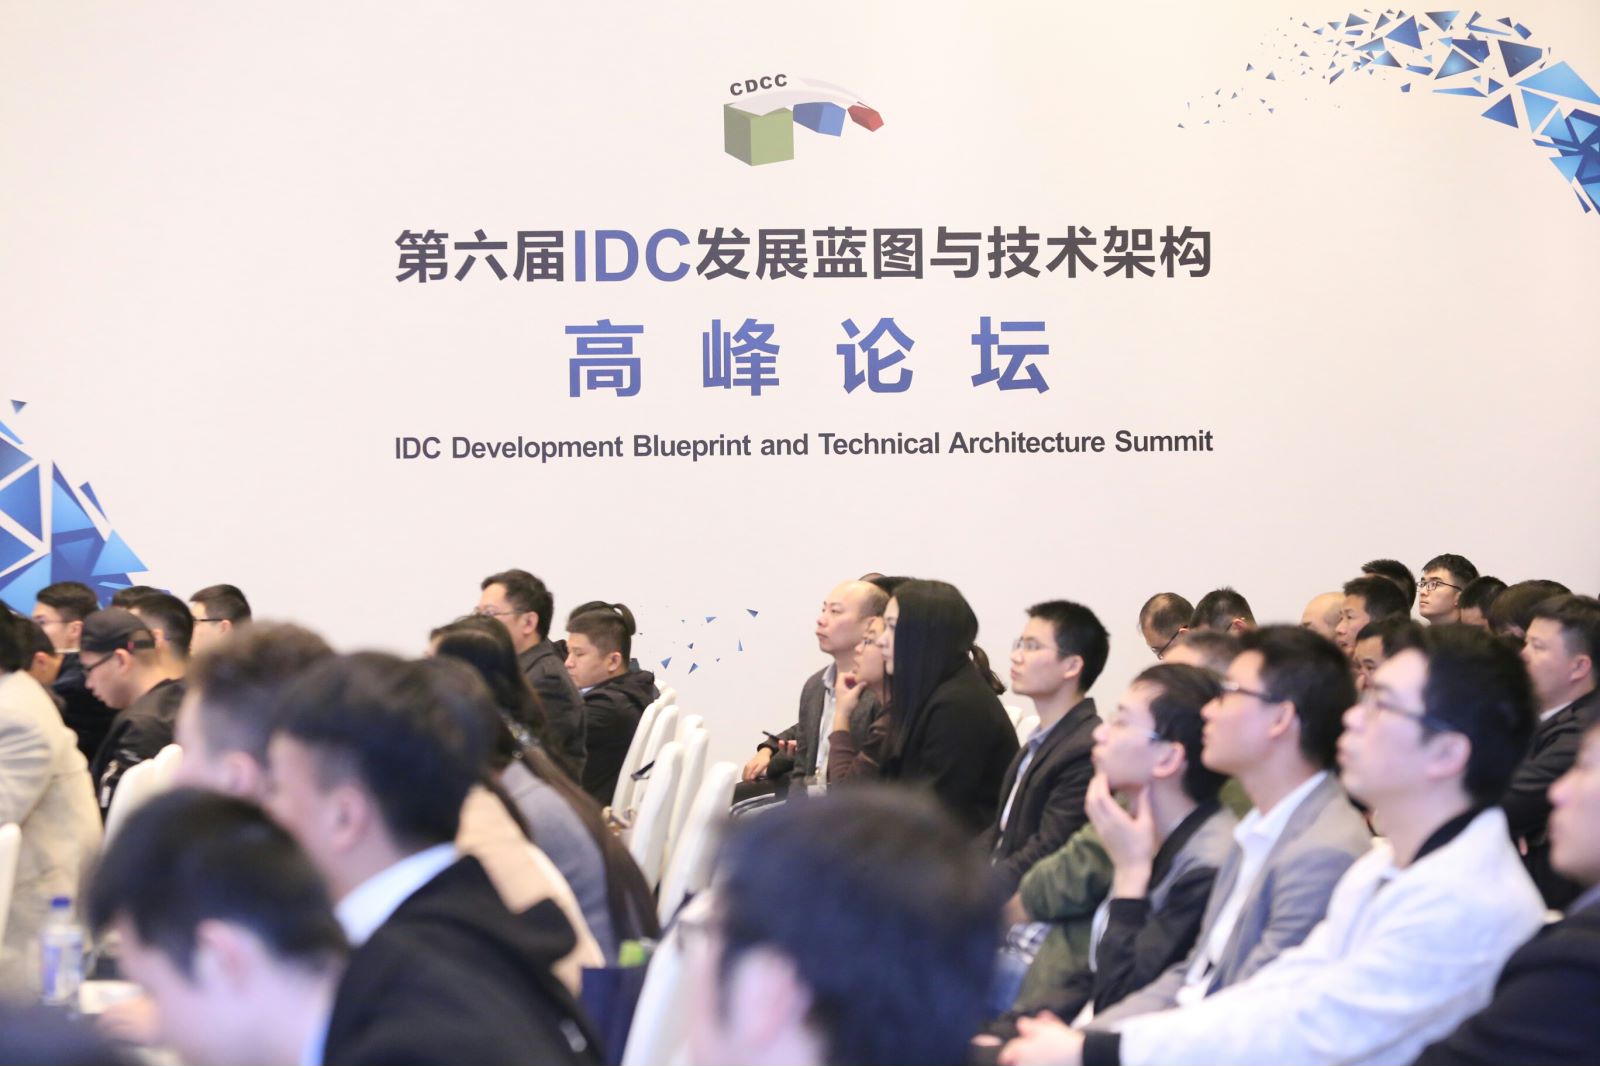 伊蒙妮莎精彩亮相IDC发展蓝图与技术架构高峰论坛